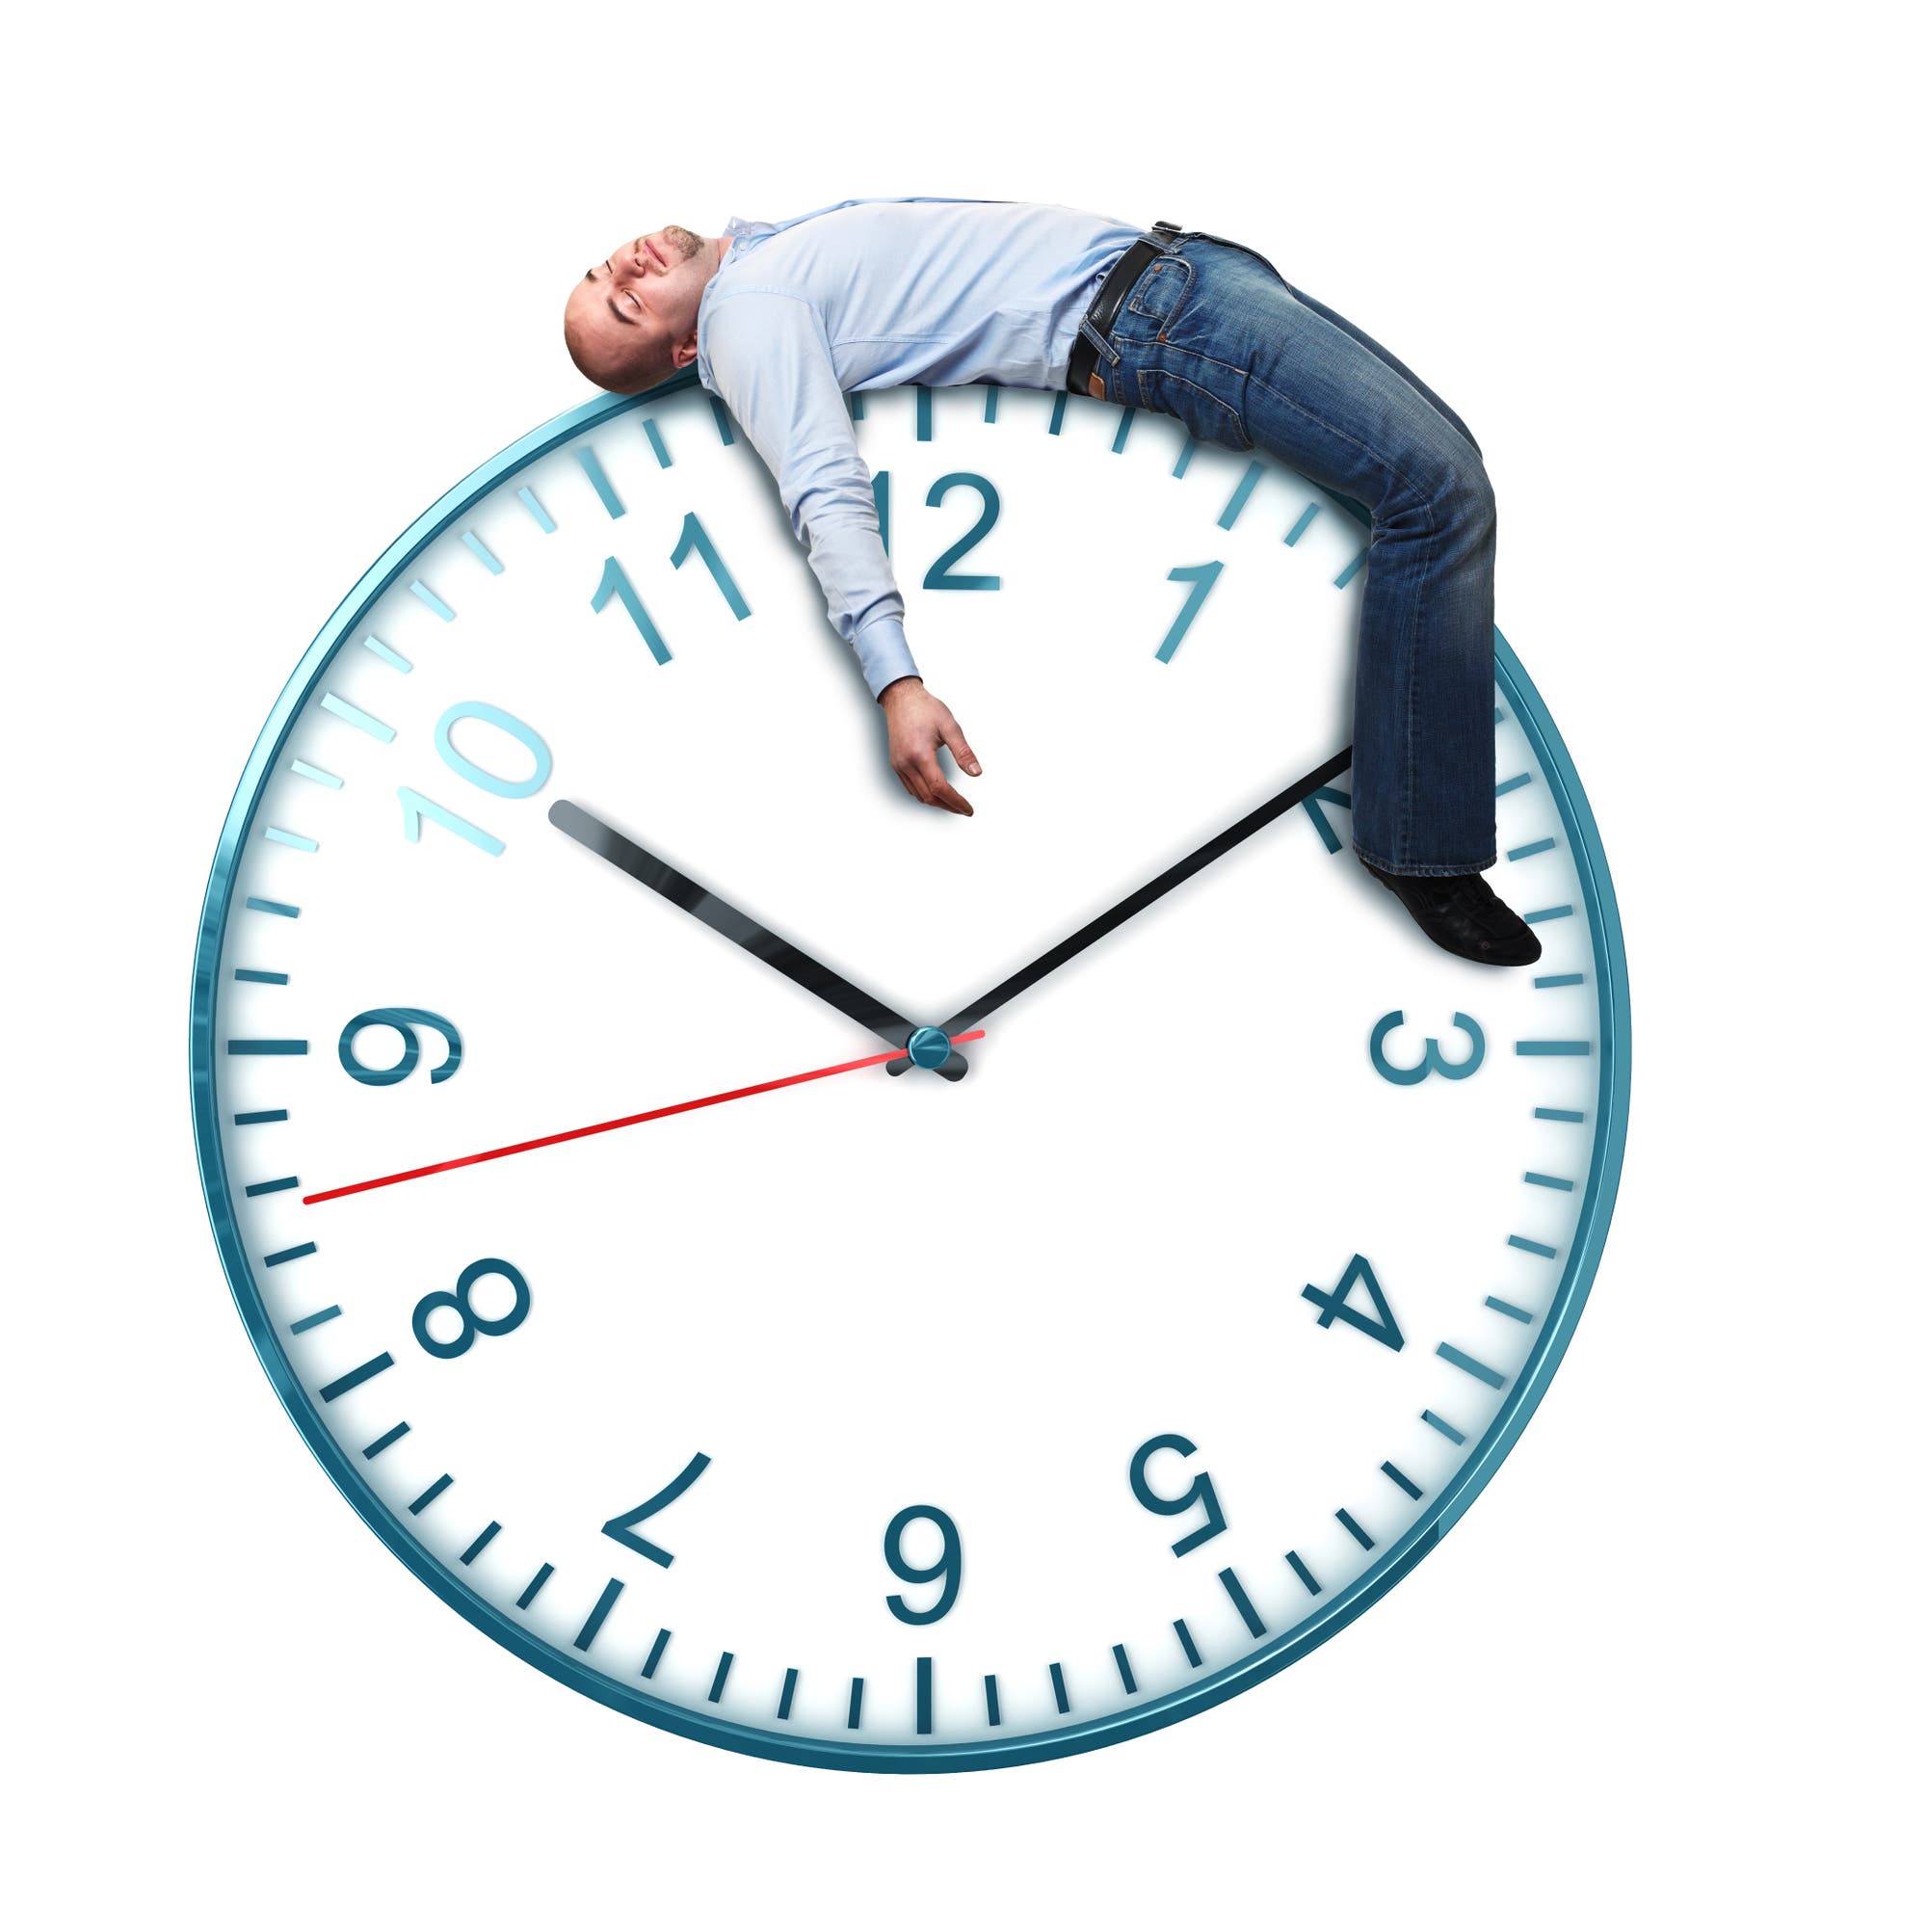 Auf einer riesigen Uhr liegt ein müder Mann und schläft